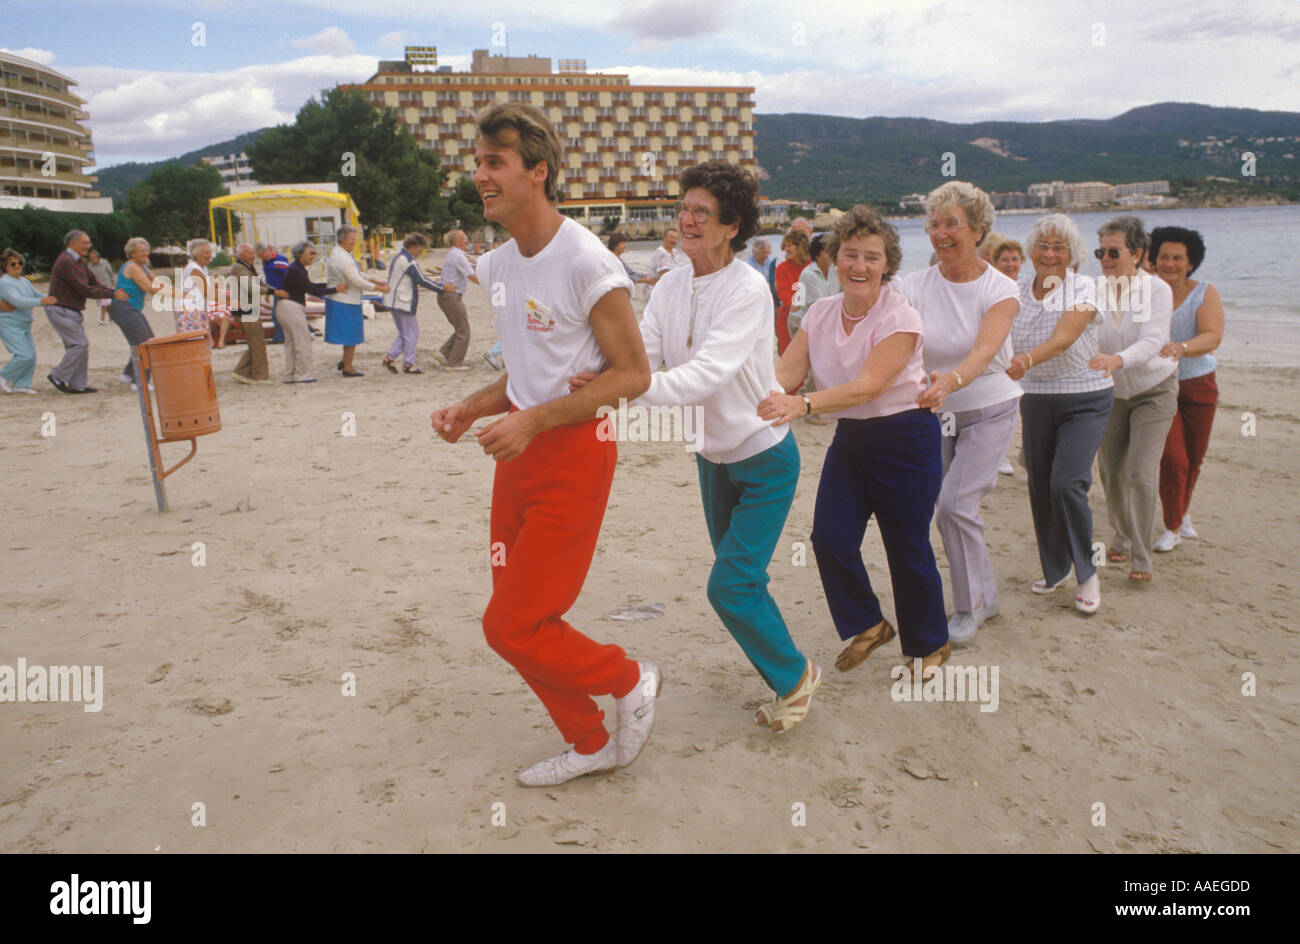 Holiday Rep groupe de personnes âgées maintien en forme jeunes à coeur seniors britanniques en vacances d'hiver à Palma Nova, Majorque Espagne années 1980 HOMER SYKES Banque D'Images